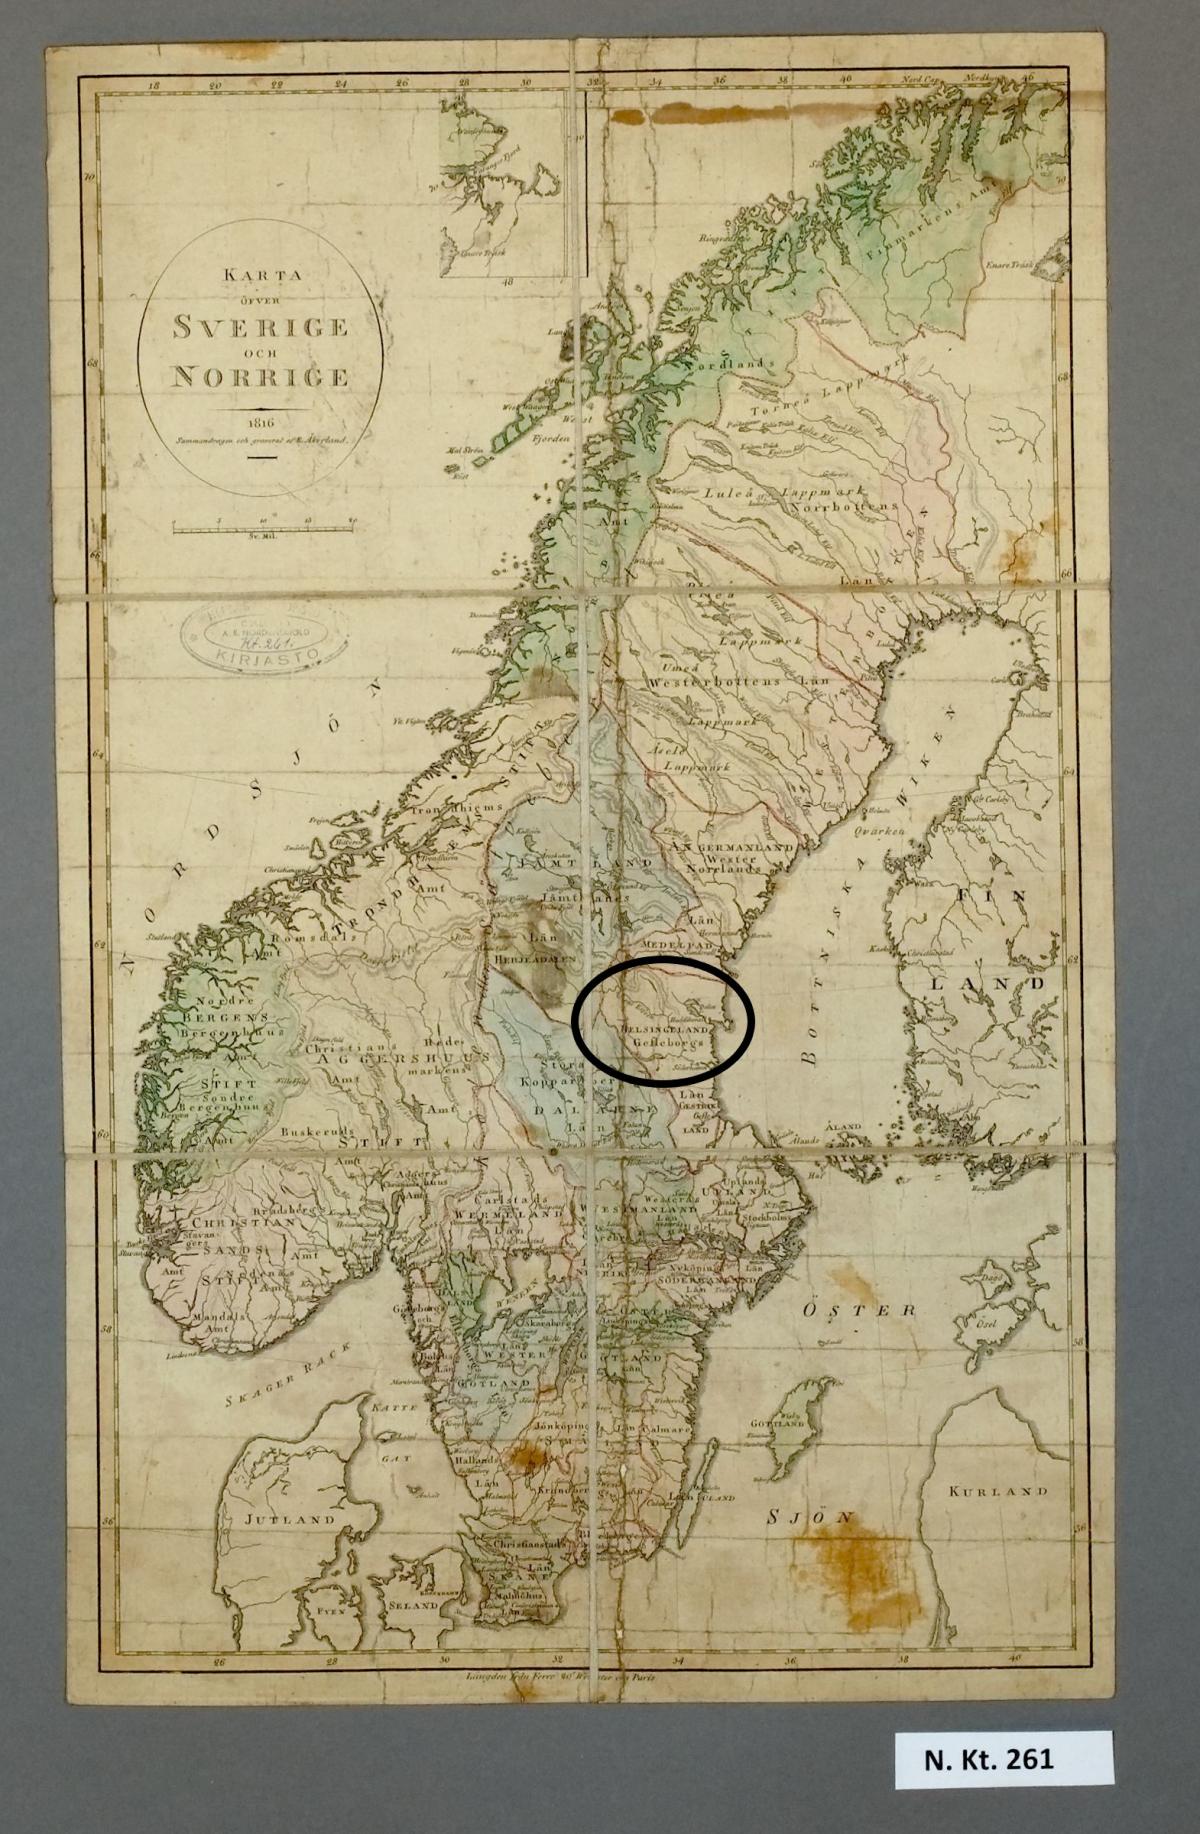 Vanha kartta Ruotsista lähialueineen, johon merkitty Hälsinglandin alue